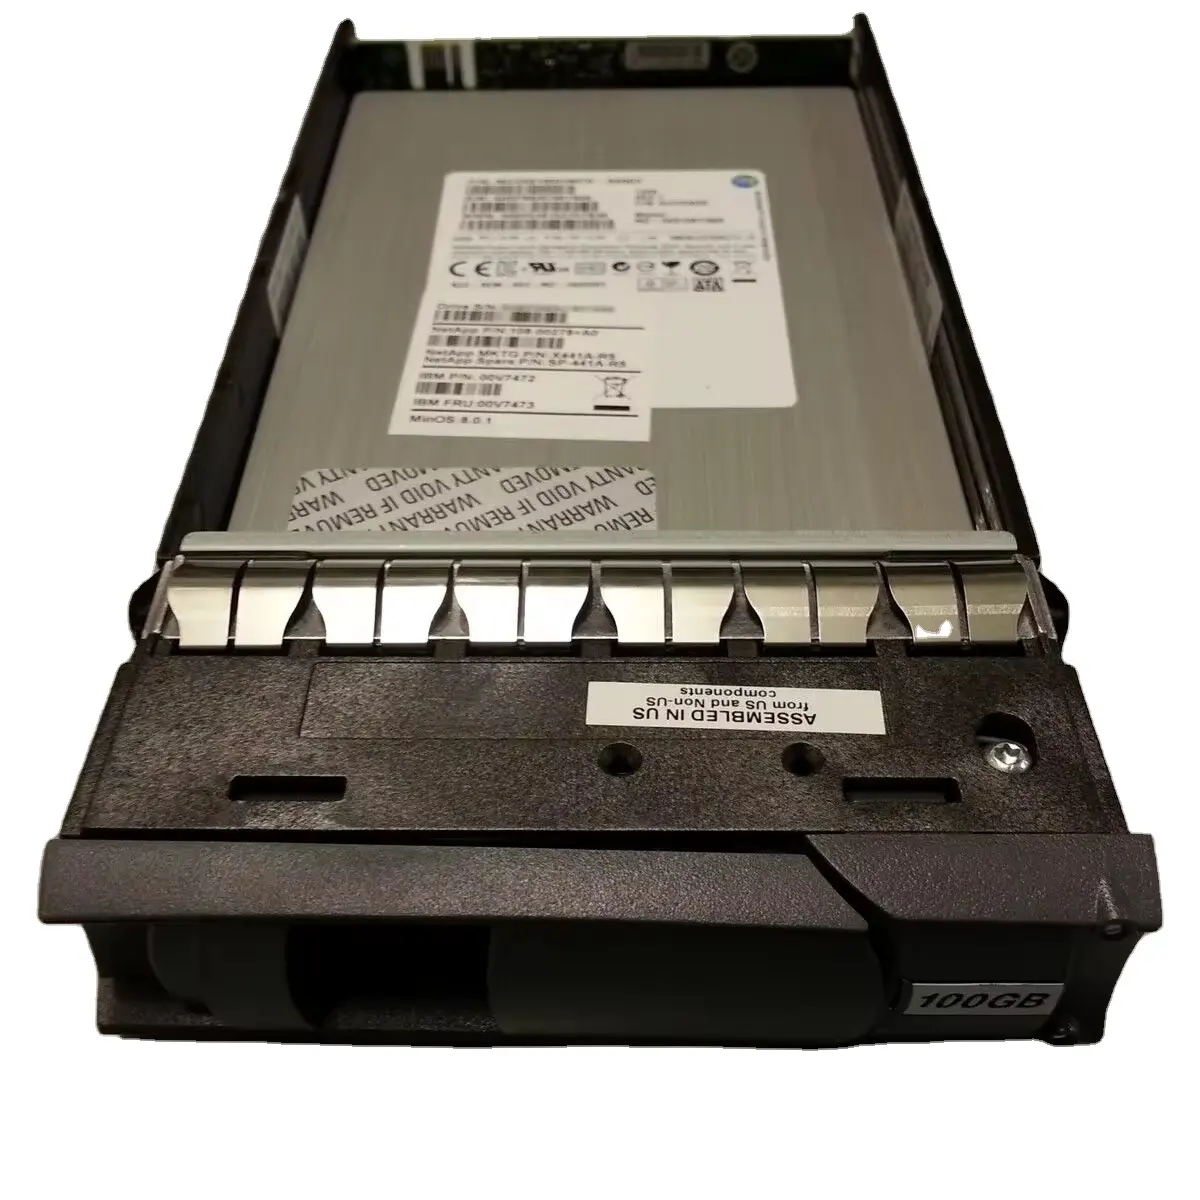 Disco duro de alto rendimiento NETAPP 100GB SAS 6G LFF SSD